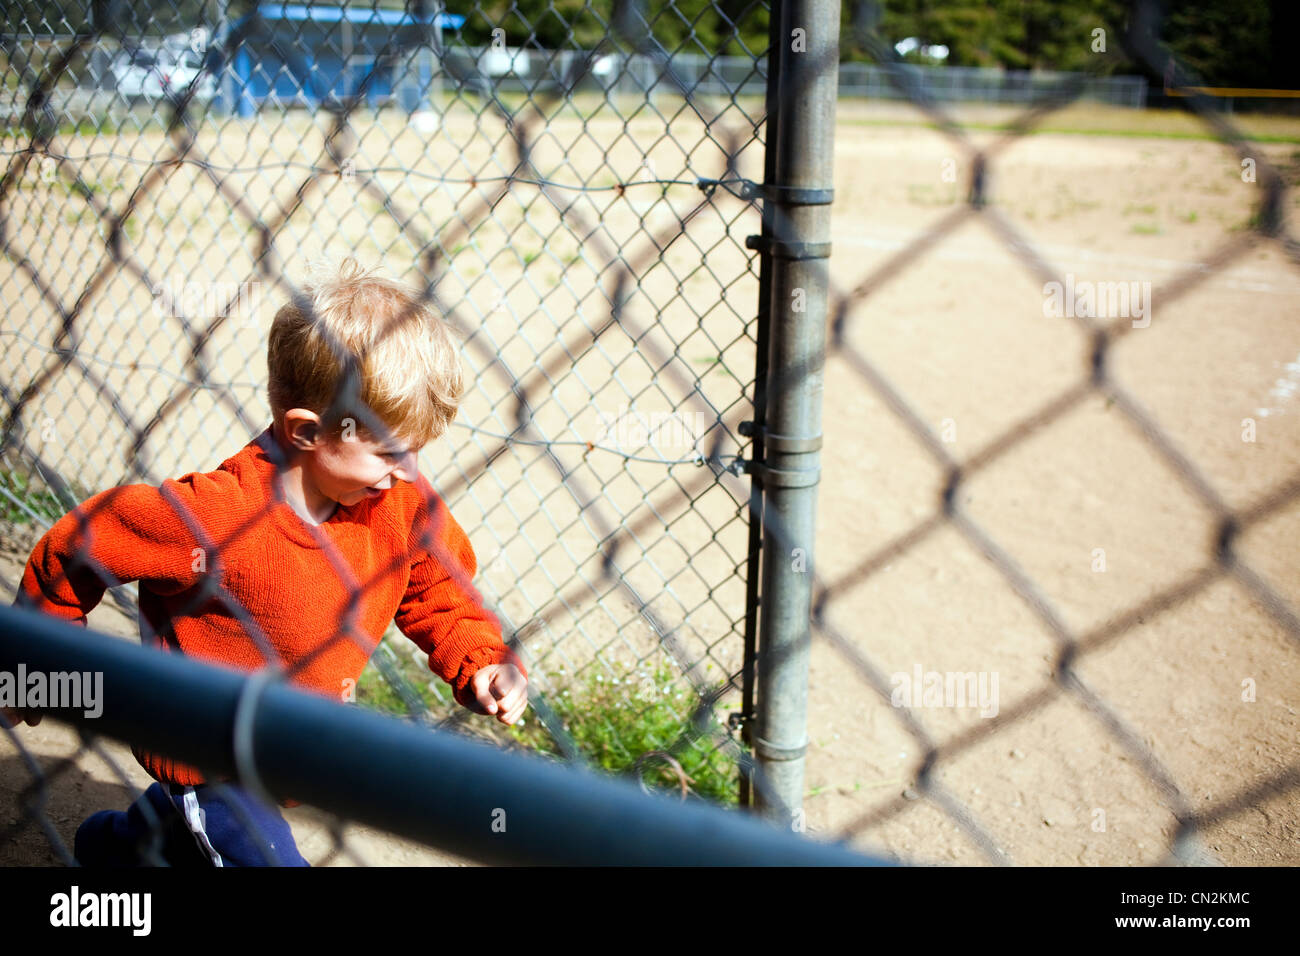 Jeune garçon sur le terrain de baseball Banque D'Images